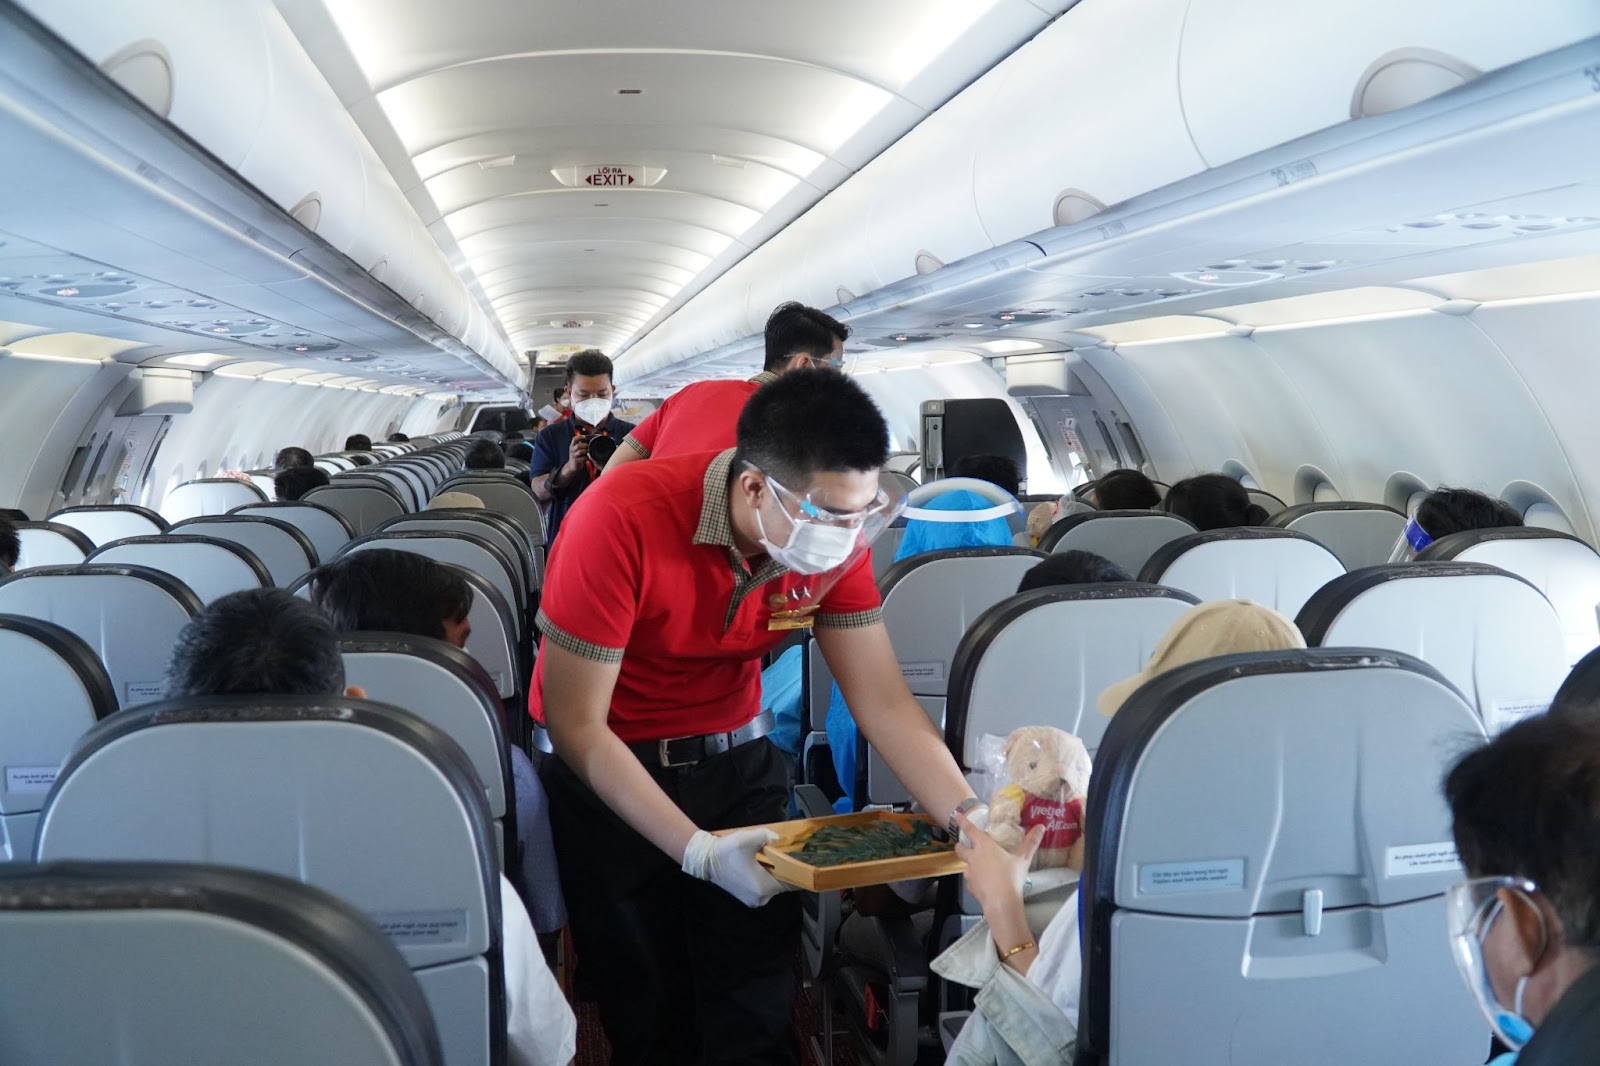 Chuyến bay 0 đồng của Vietjet Air và hành trình trở về quê hương của người lao động xa xứ - ảnh 13